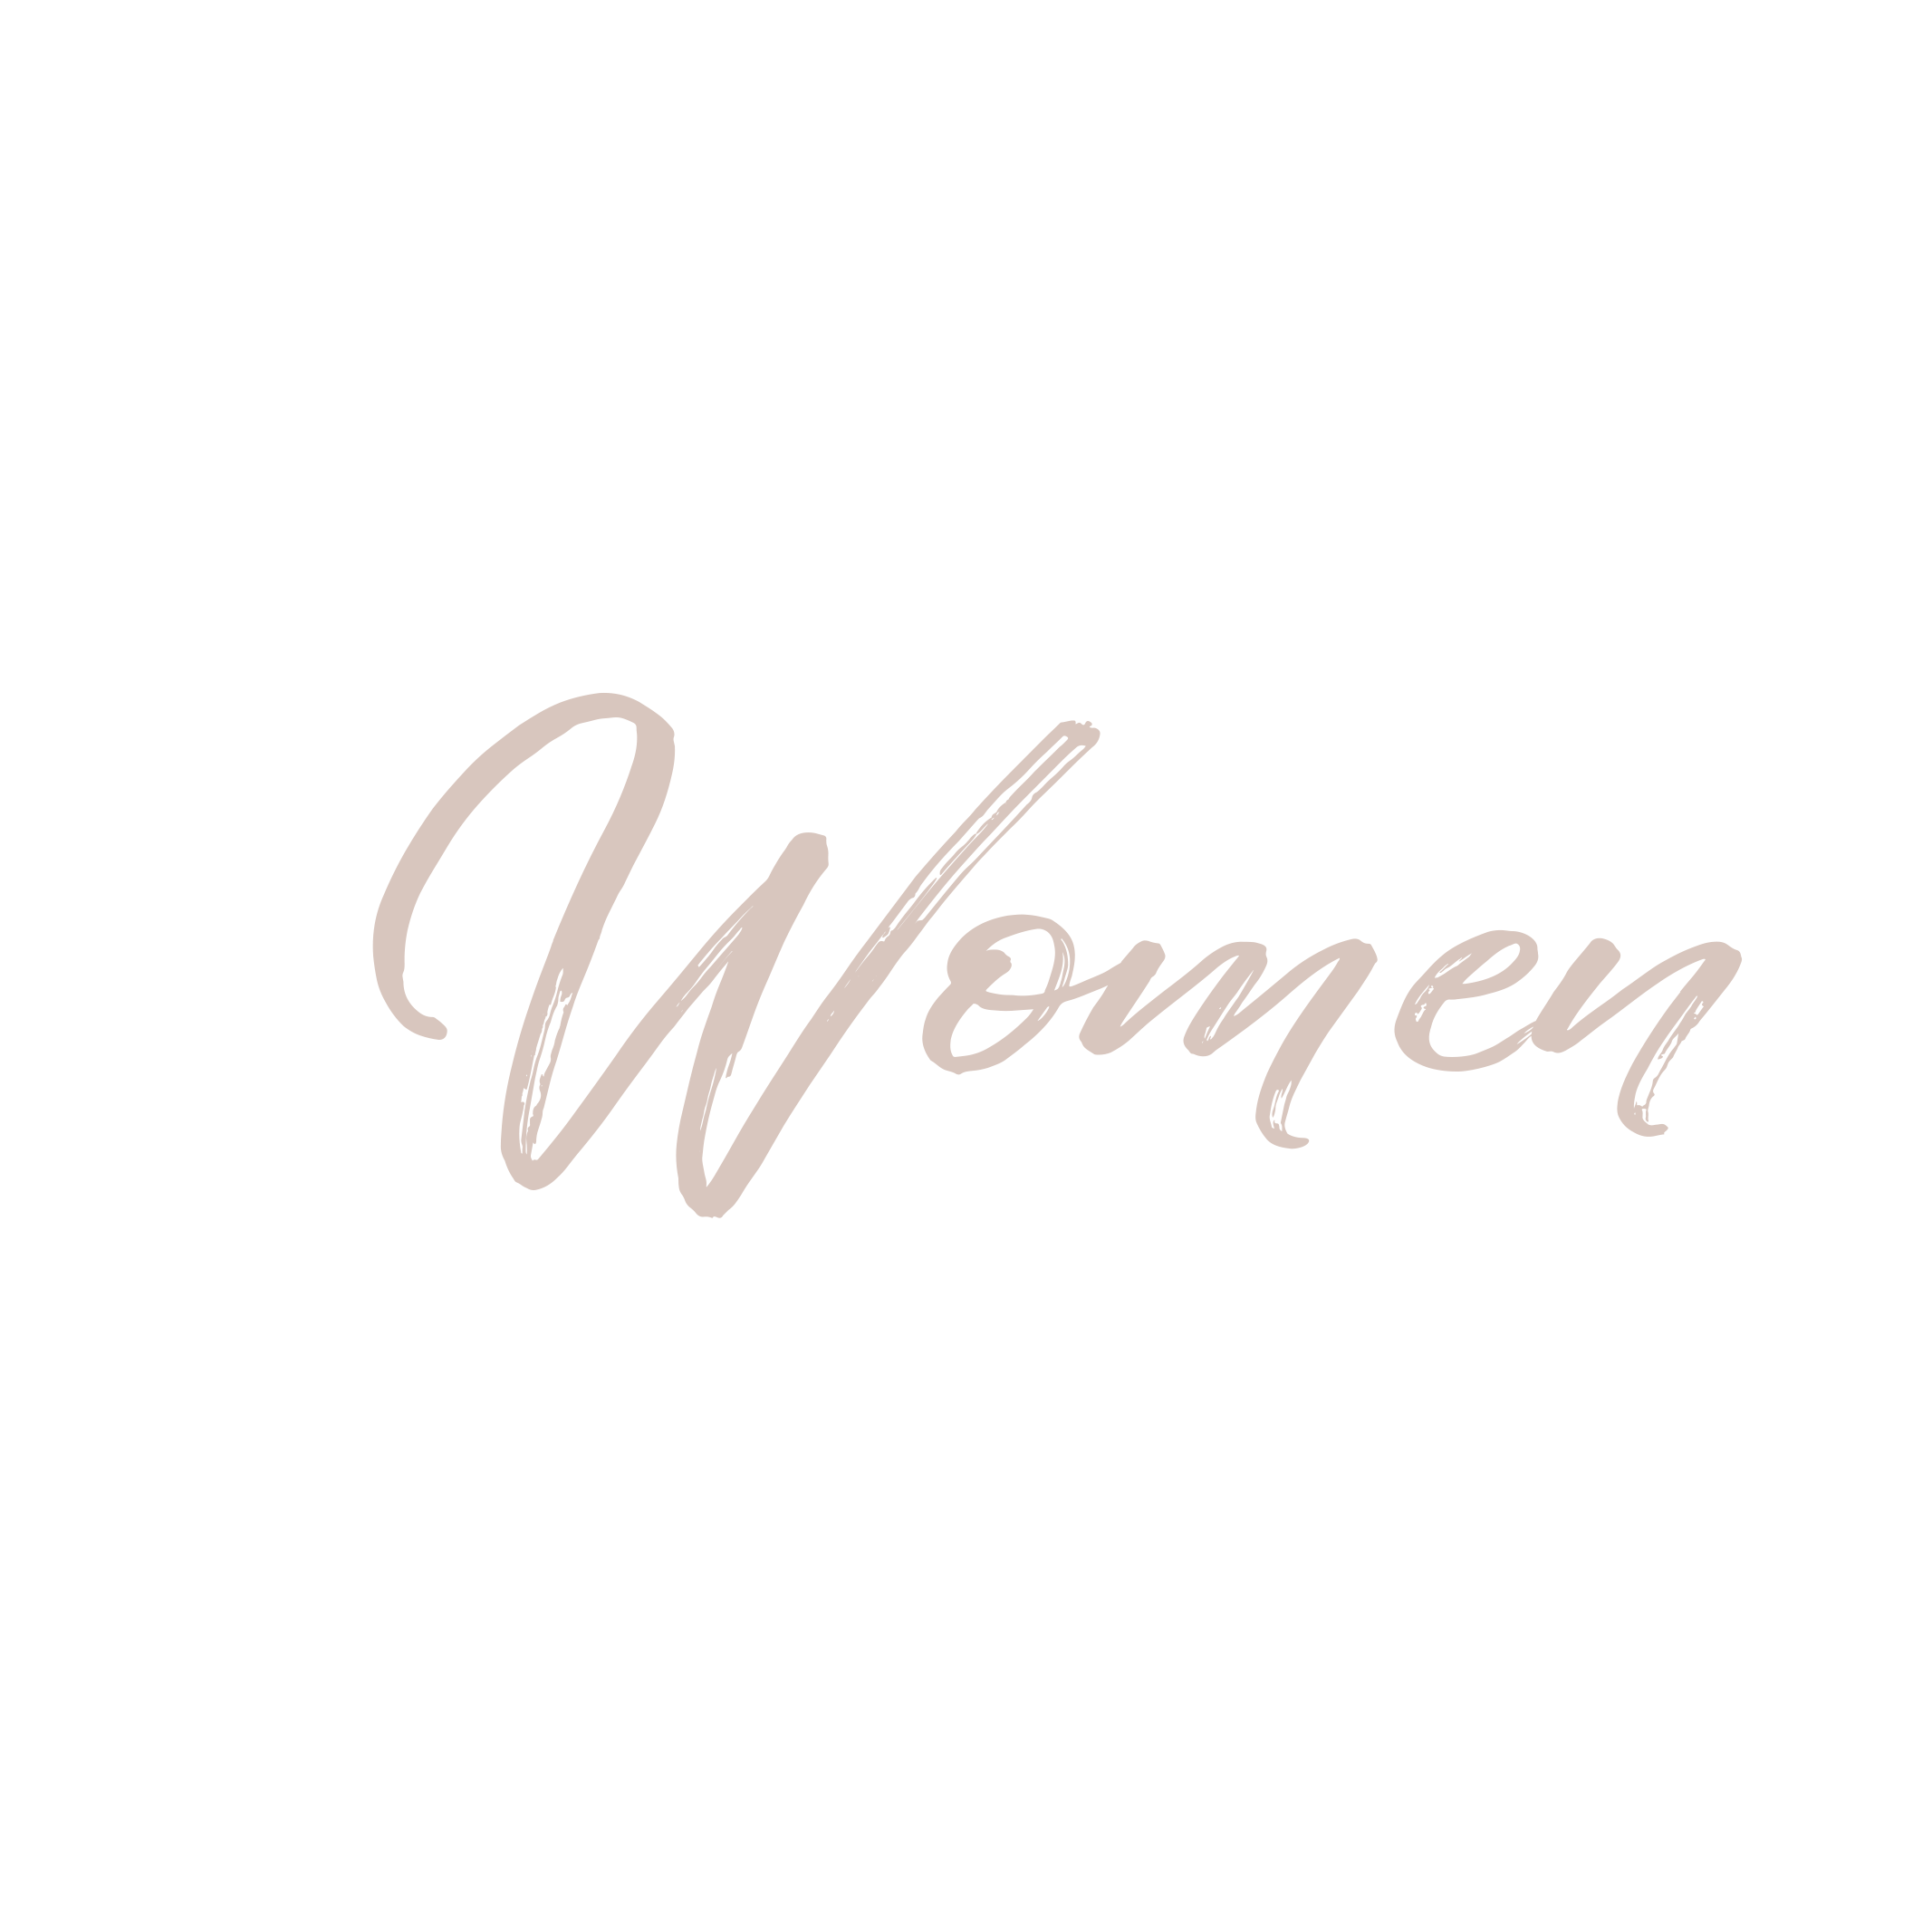 OMN Women